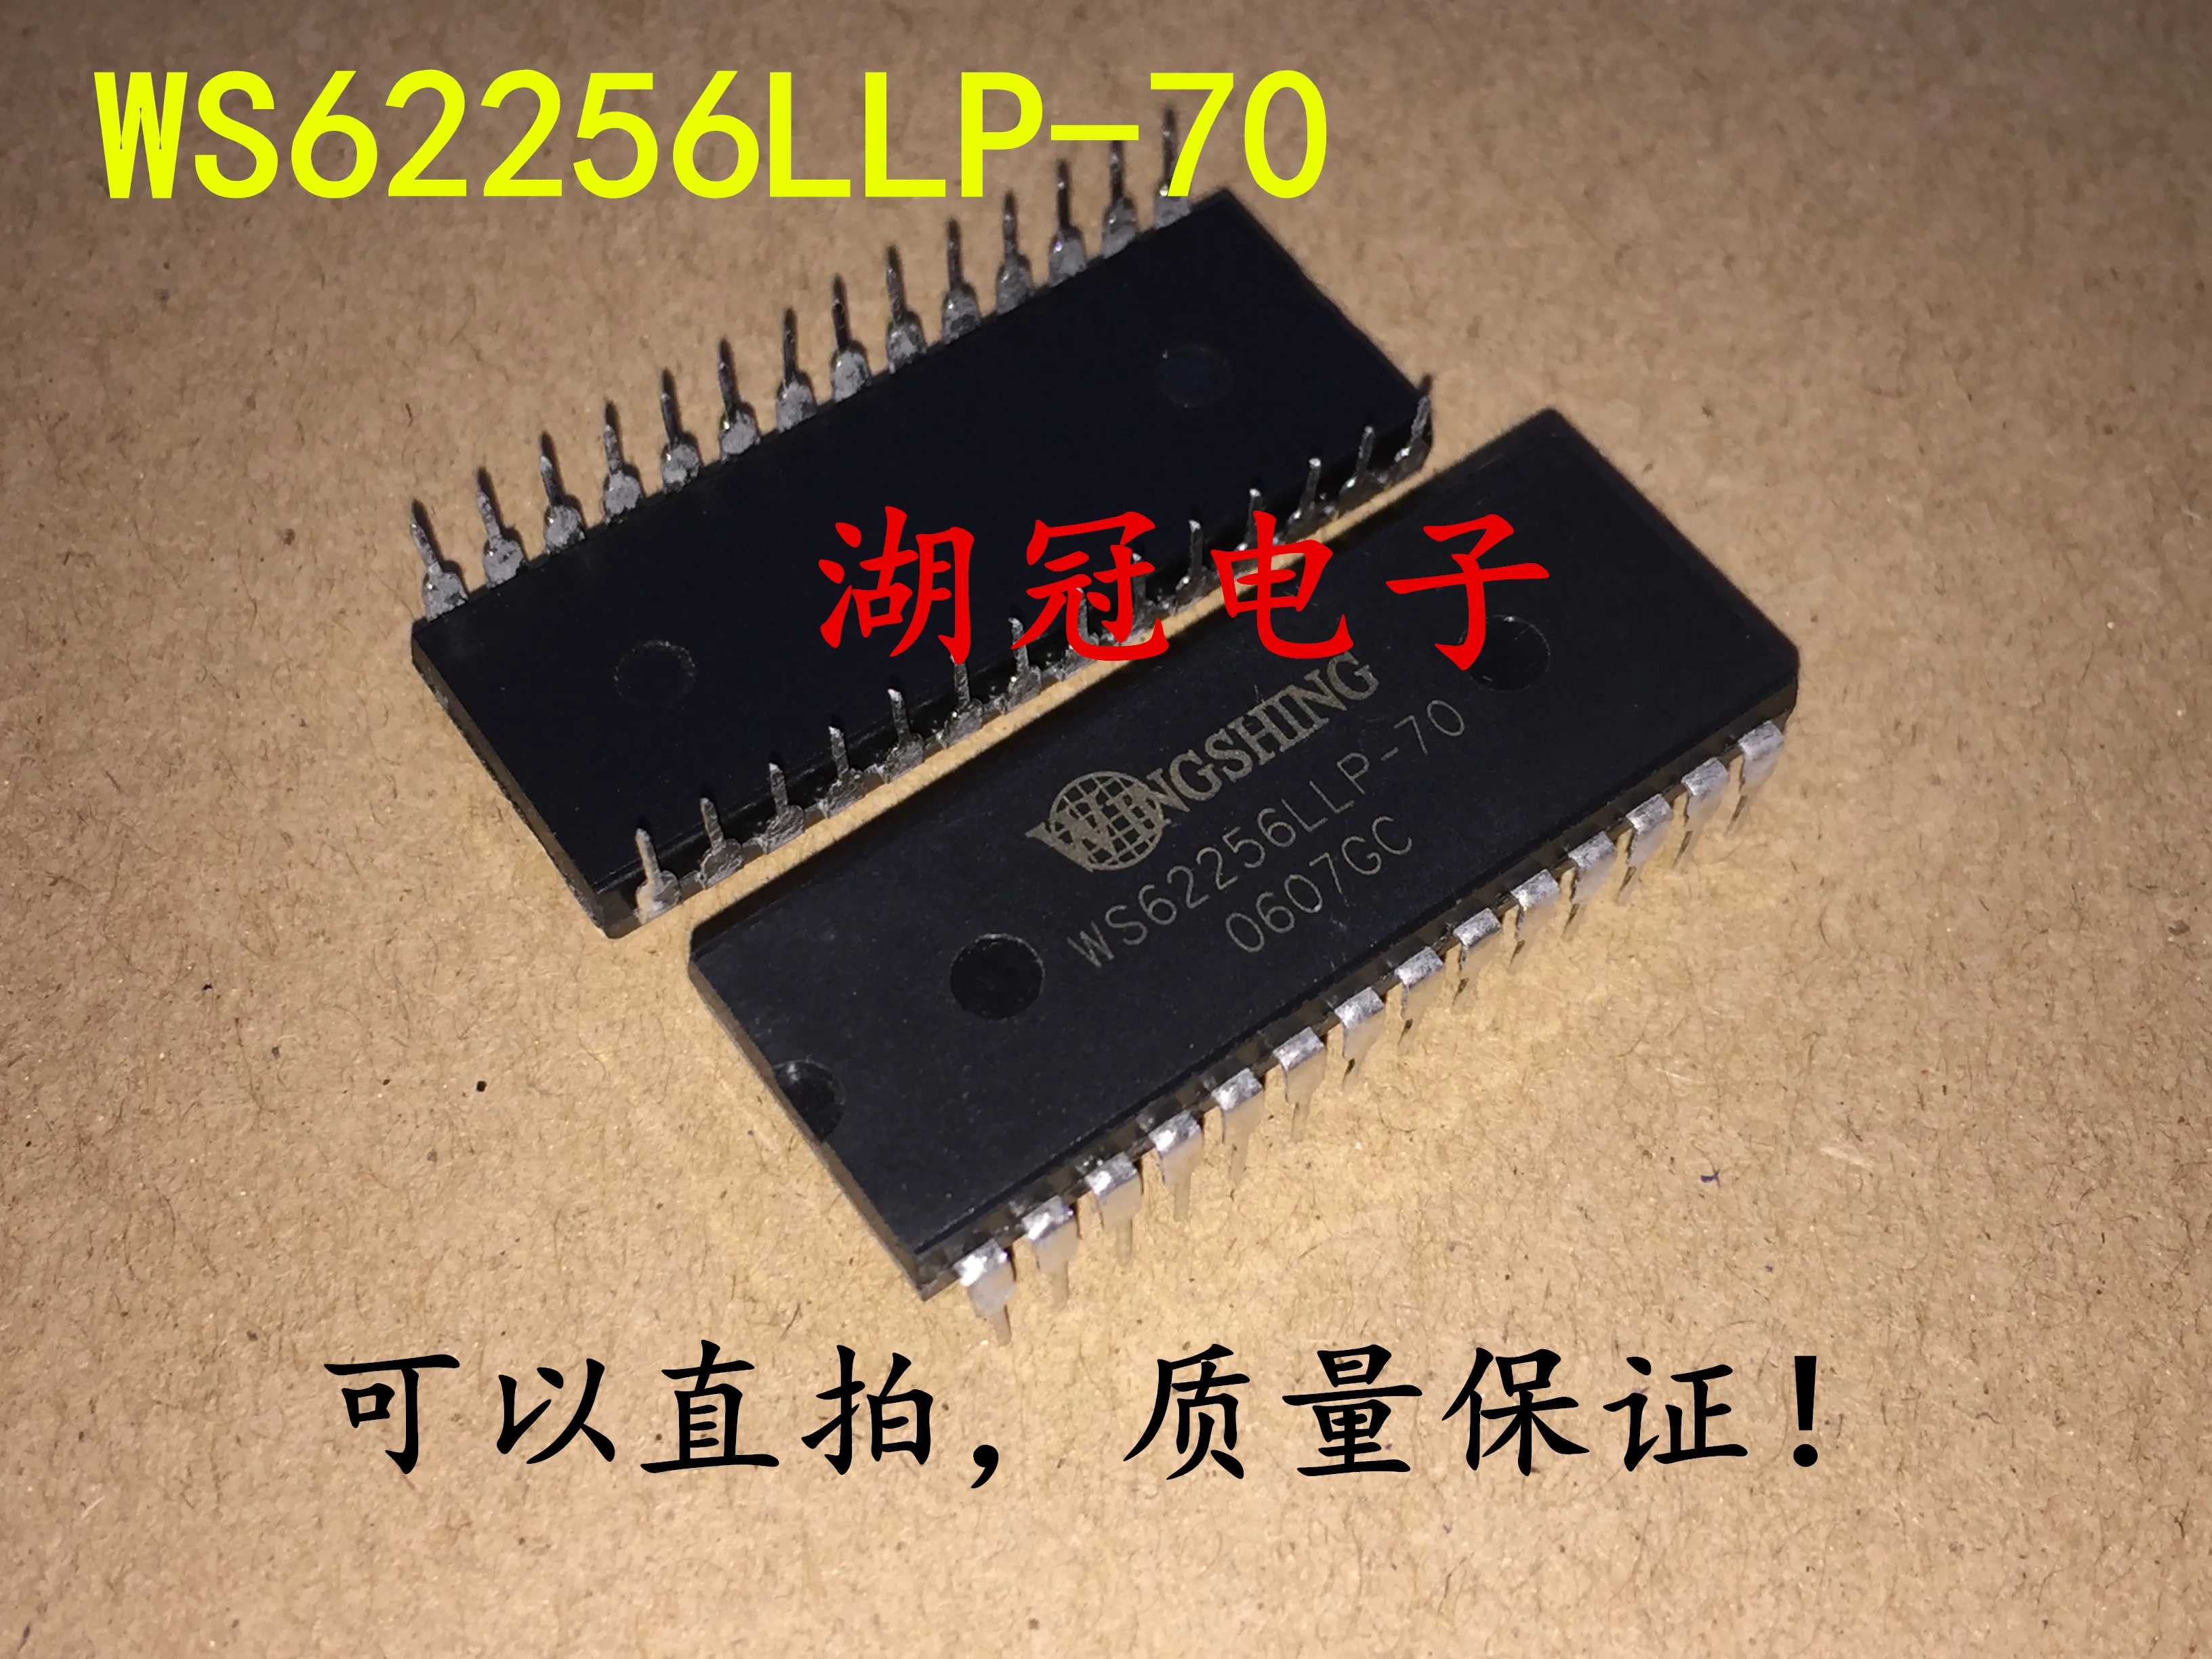 10pcs-original-new-ws62256llp-70-dip-integrated-circuit-ic